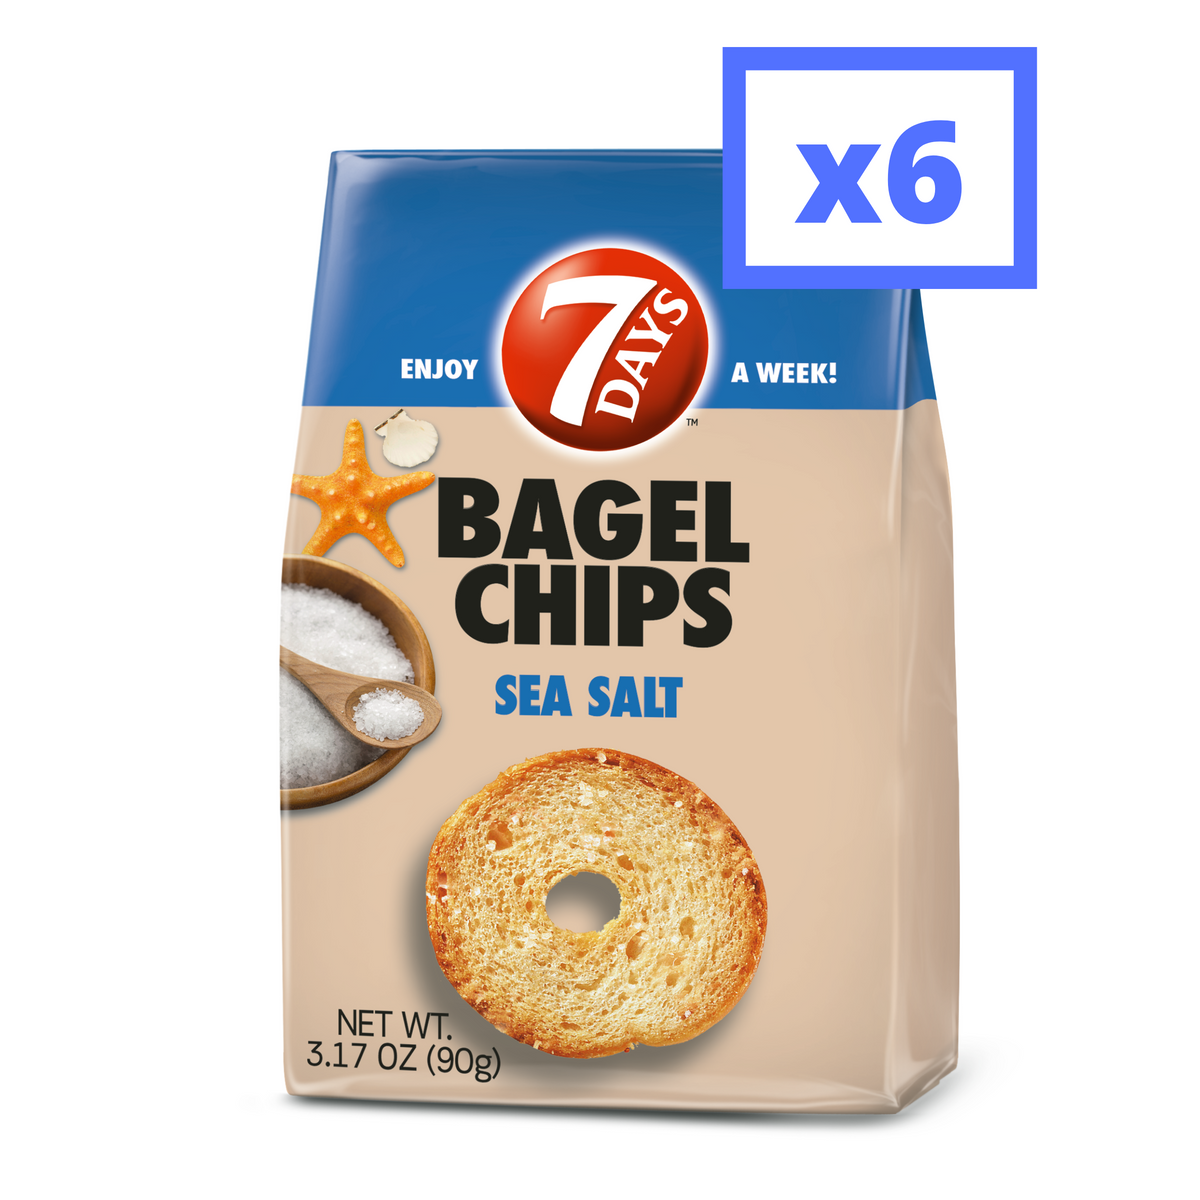 sea salt bagel chips times 6